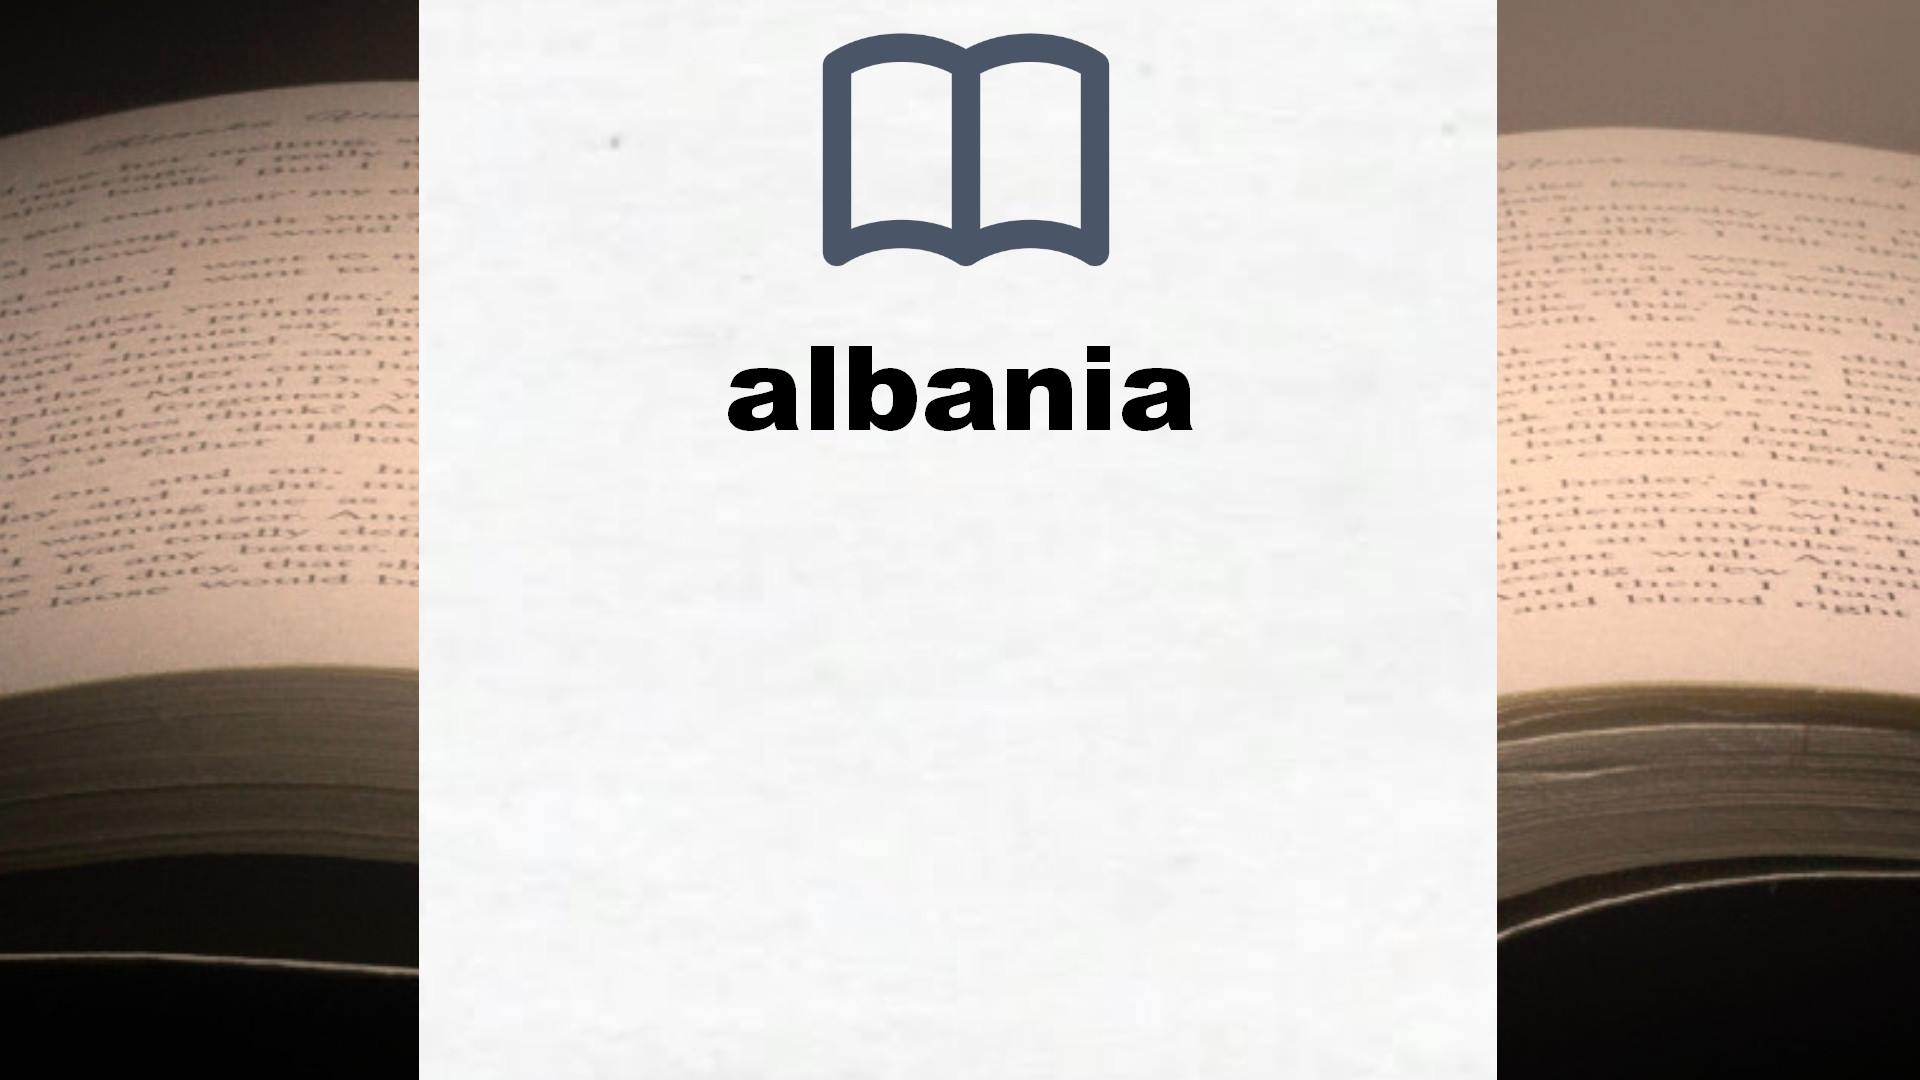 Libros sobre albania